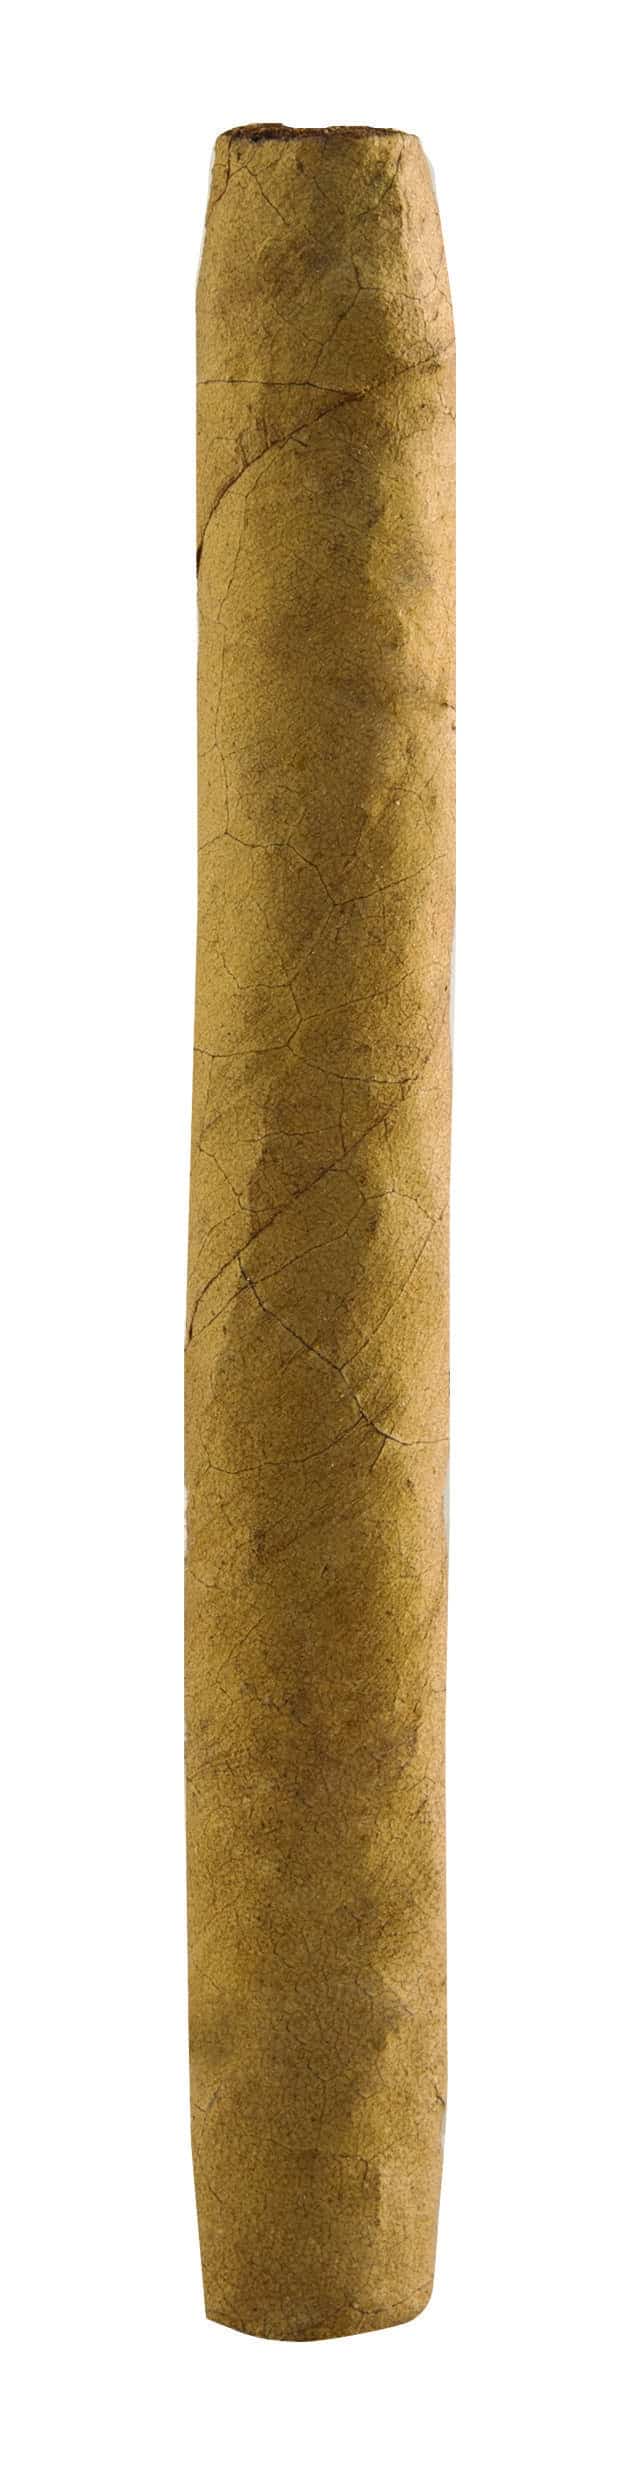 Single Ashton Senoritas Connecticut cigar